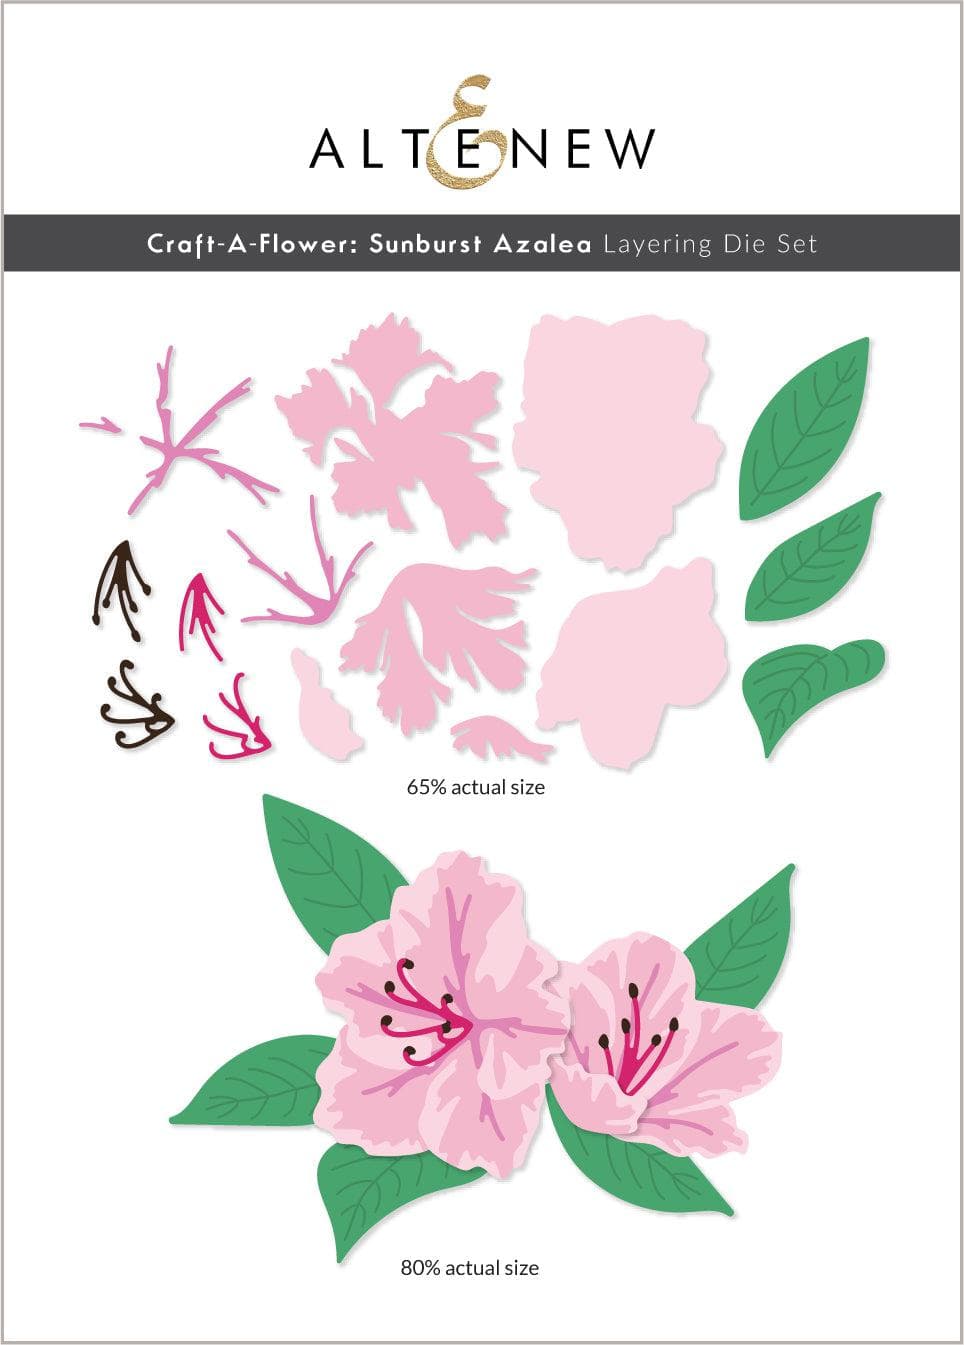 Craft-A-Flower: Sunburst Azalea Layering Die Set